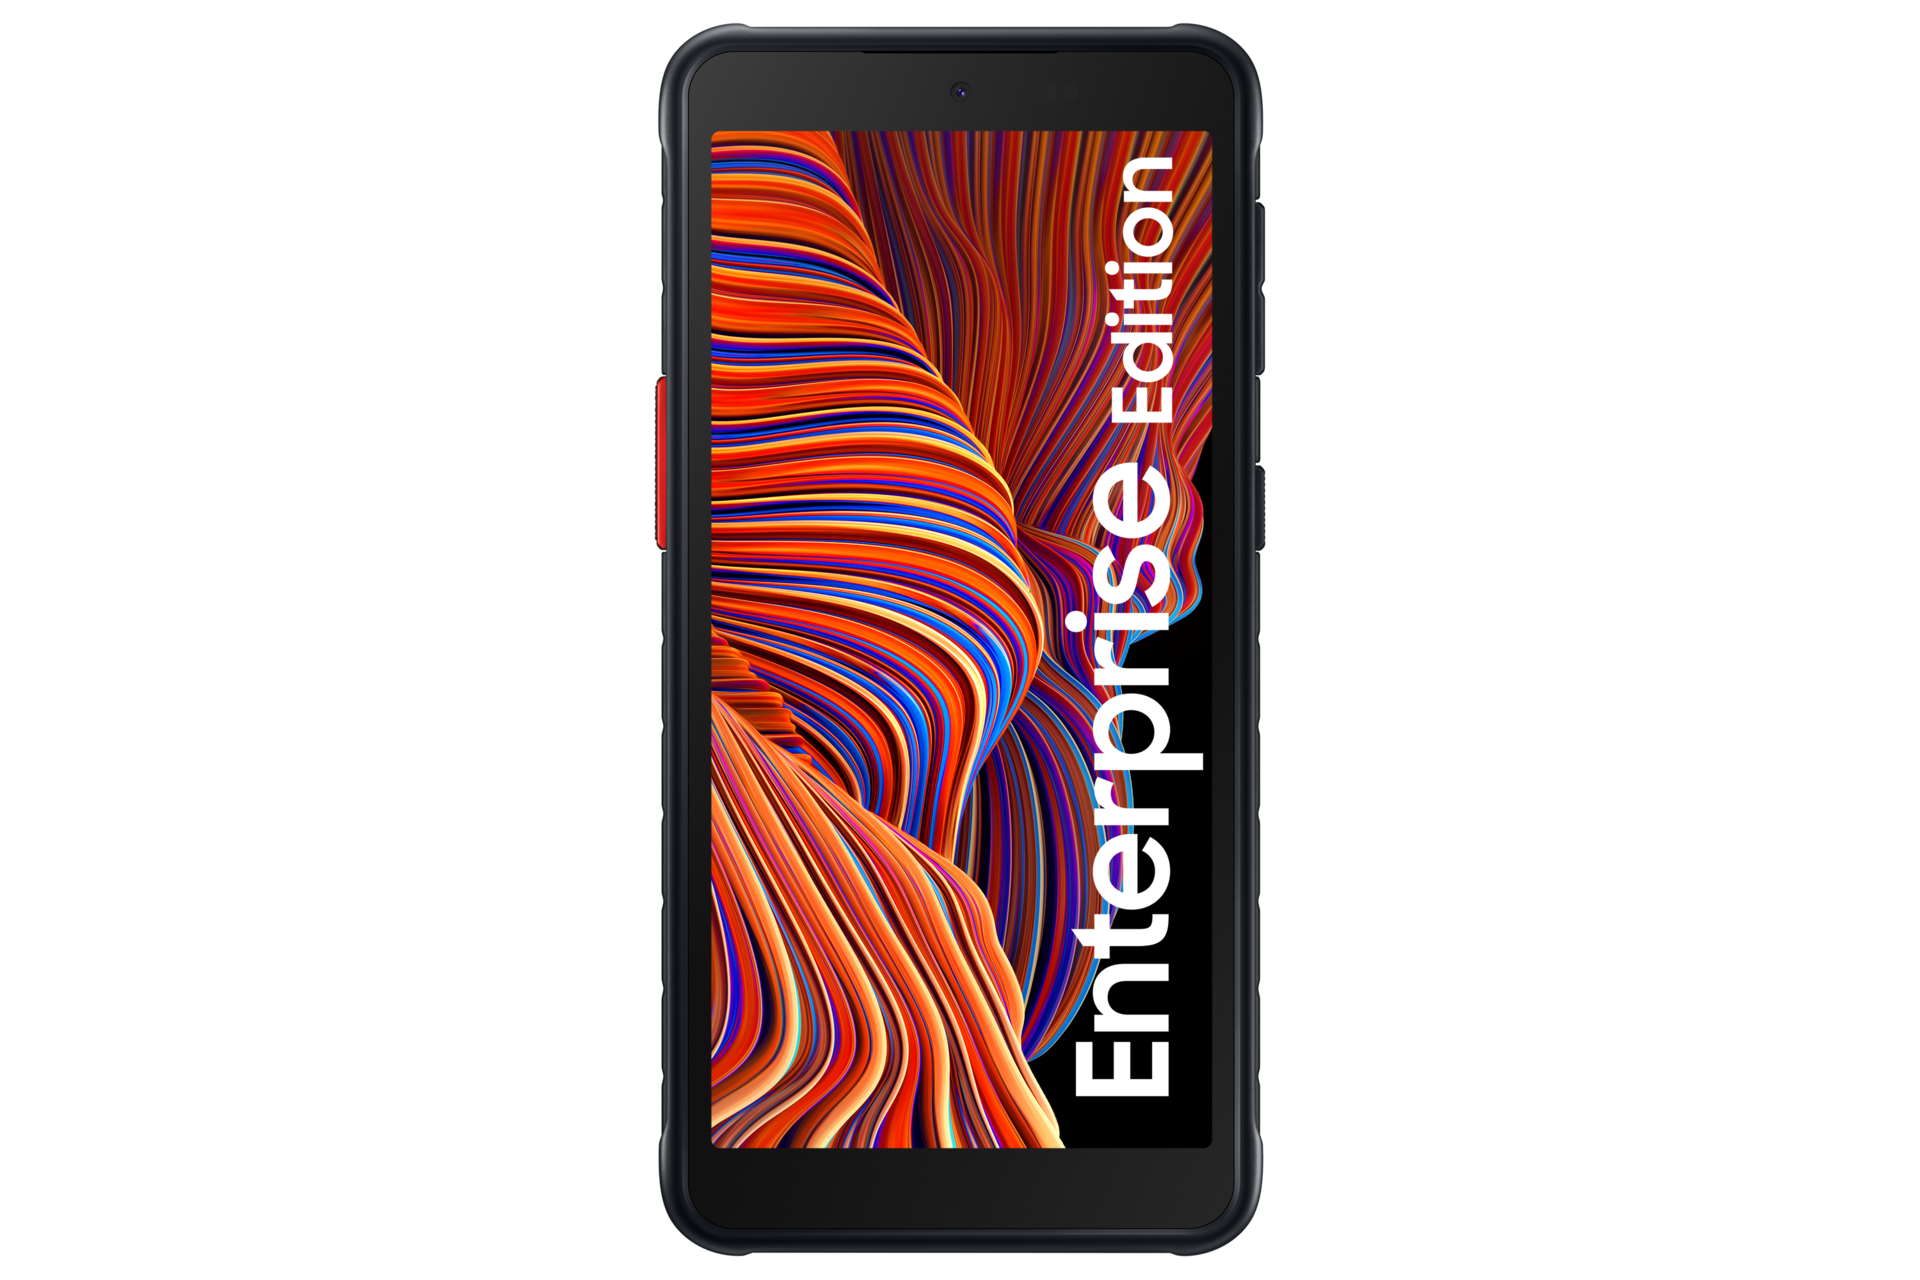 Kaufen | Galaxy Xcover 5 EE black 64 GB | Samsung Deutschland